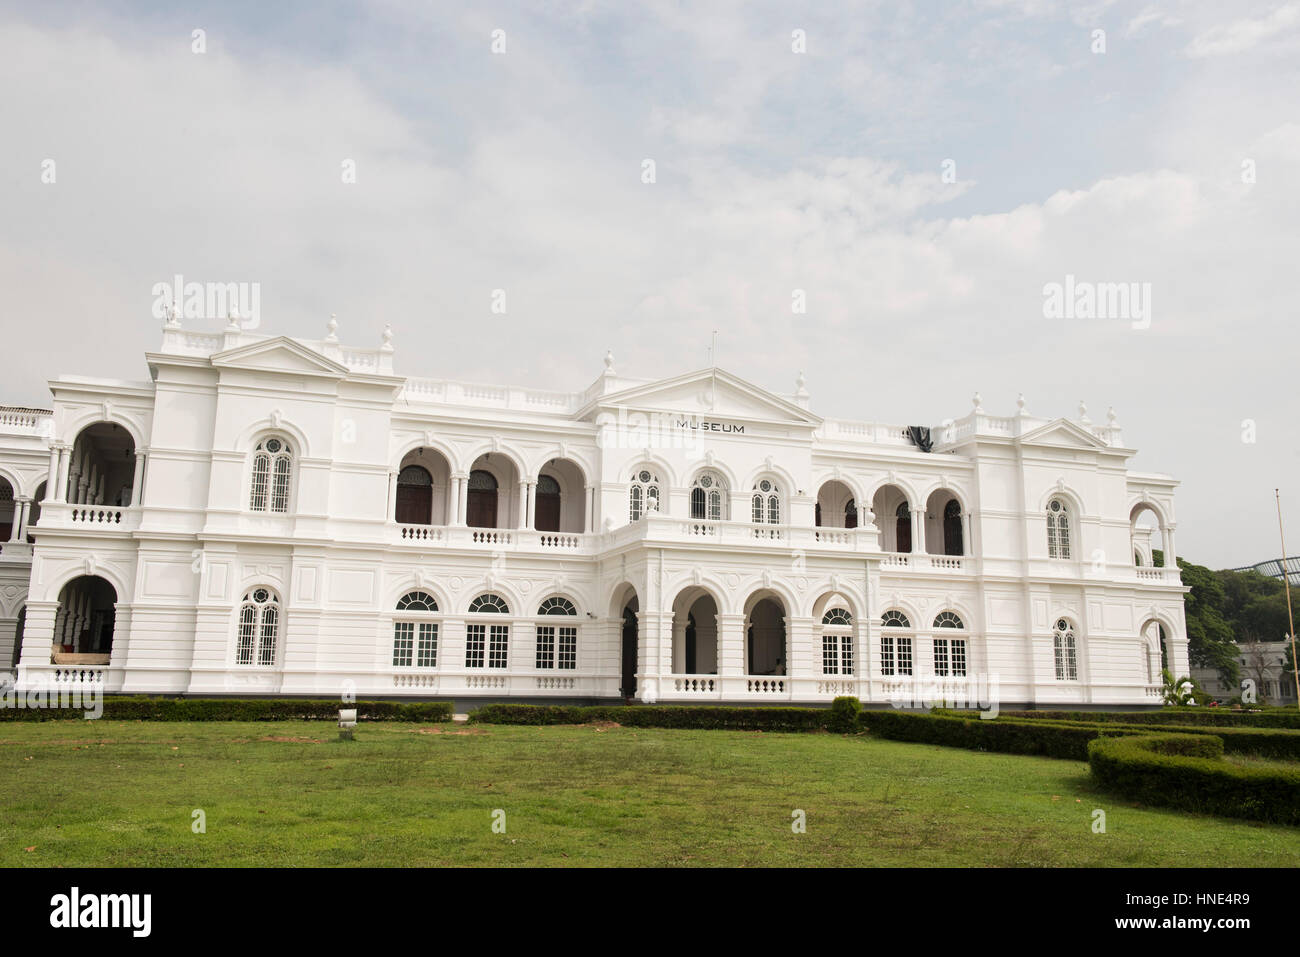 Le musée national situé dans un bâtiment néoclassique de 1877, Colombo, Sri Lanka Banque D'Images